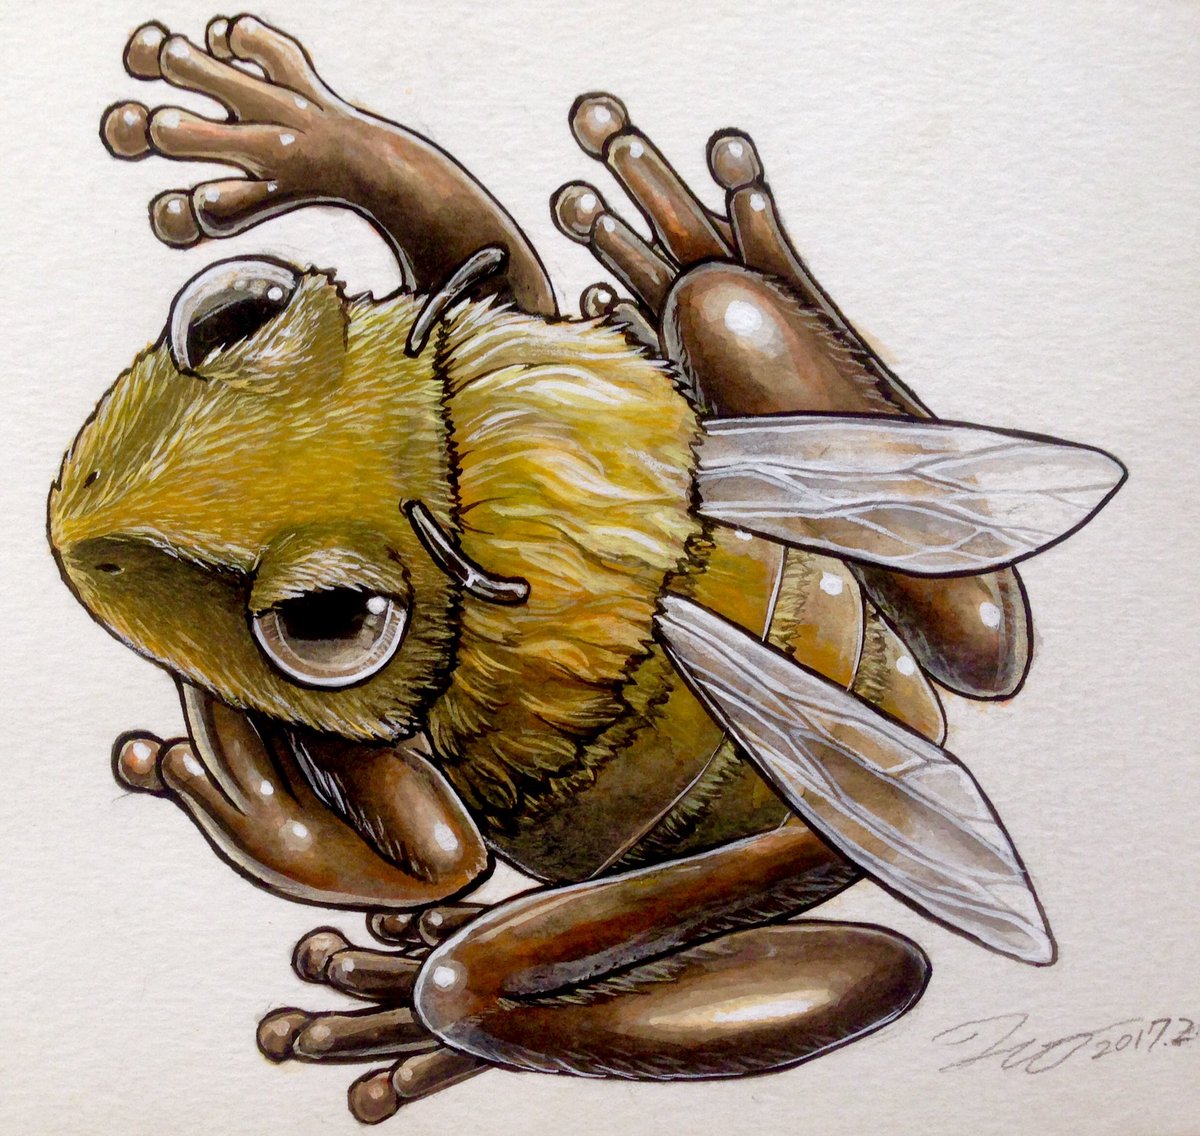 「「 #カエルメイト 」より
●ハチガエル

まるで蜂のような #カエル 。飛ぶこ」|ヒキタ レオ▶︎引田 玲雄のイラスト